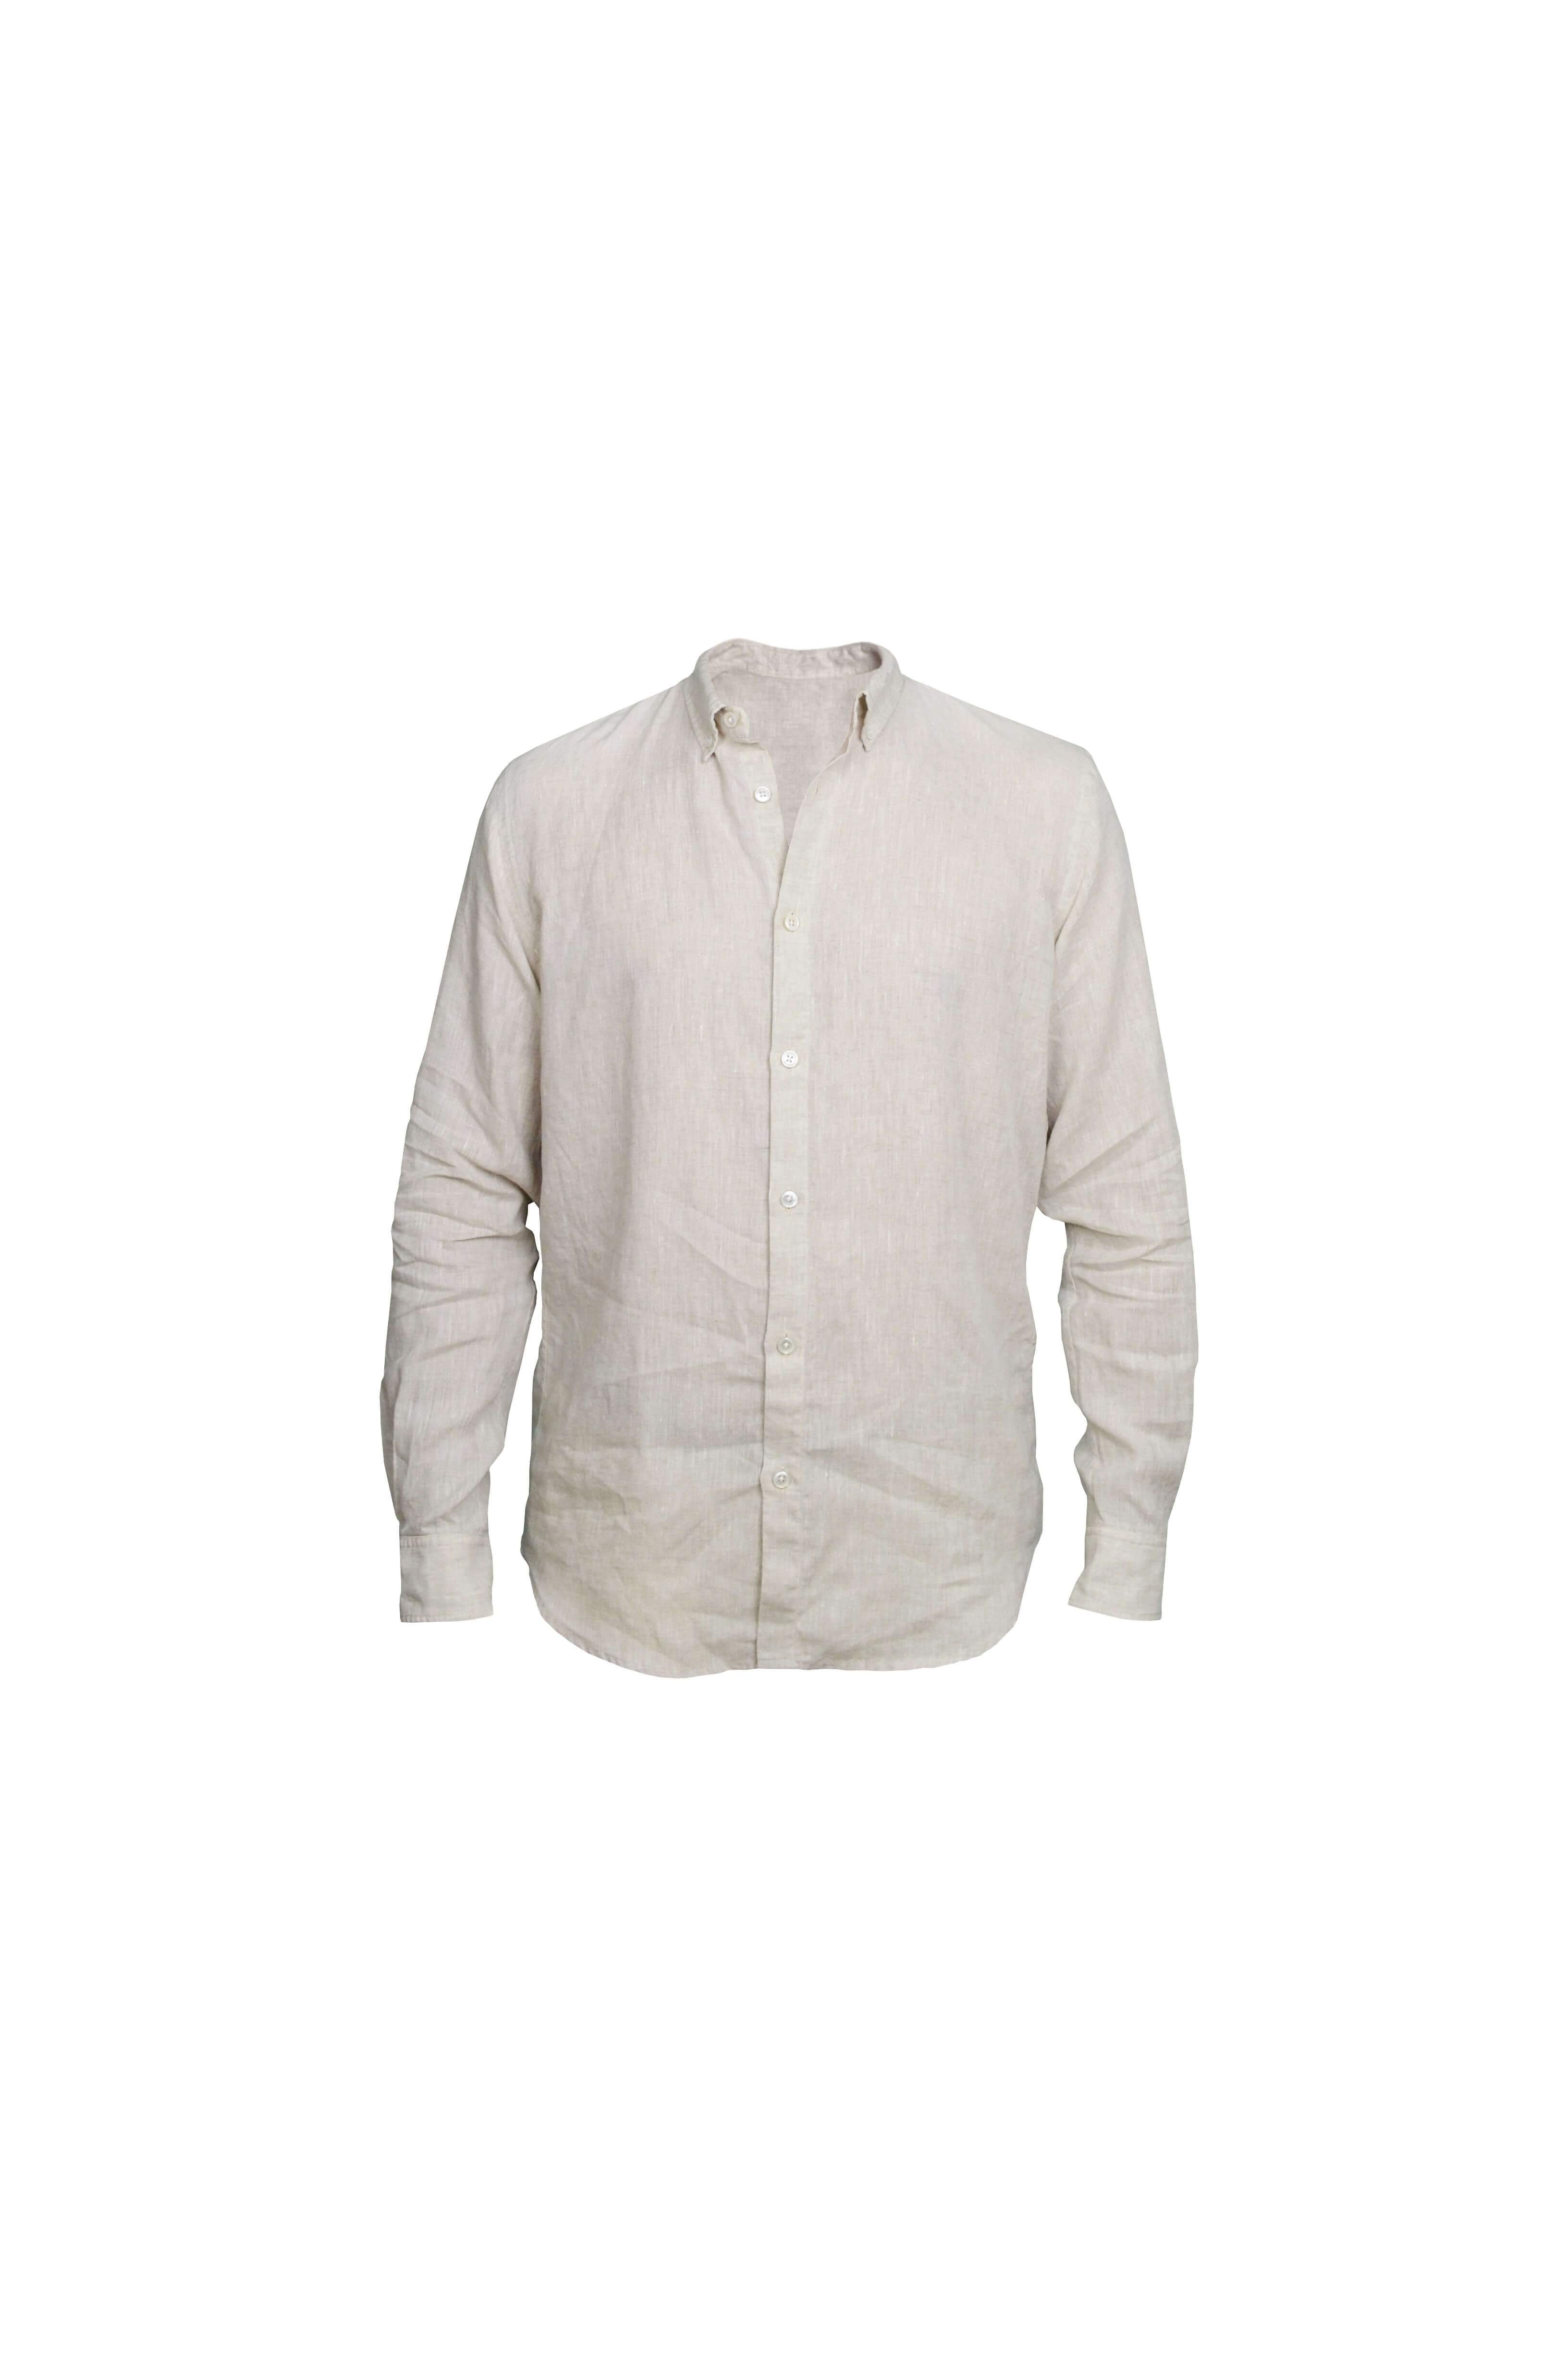 Faros Natural Linen Shirt - FAROS LINEN